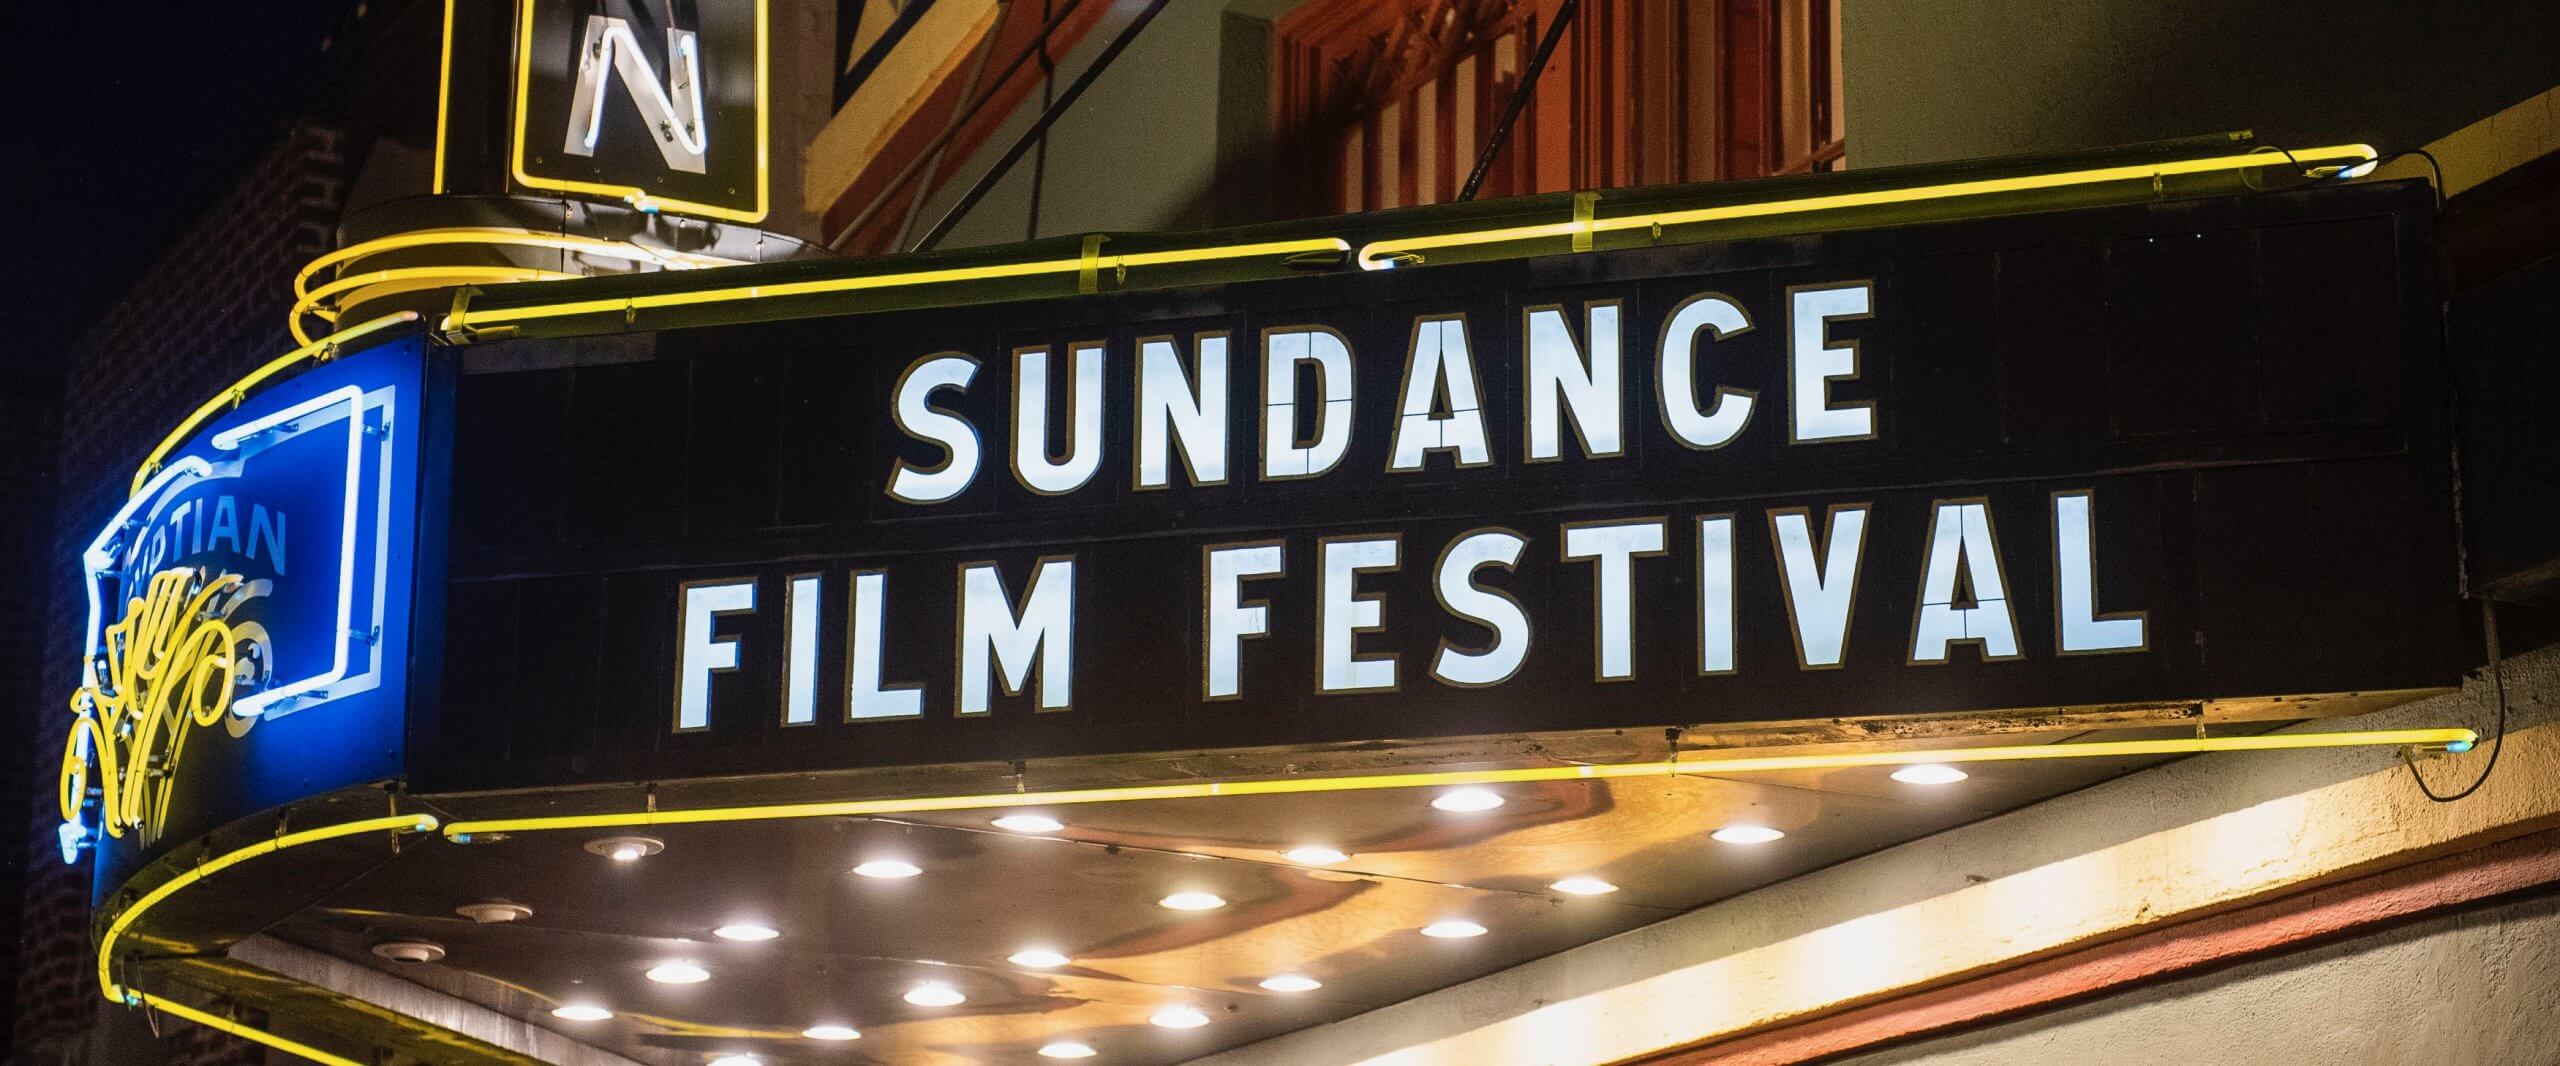 The Sundance Film Festival 2021 | Cinema Faith